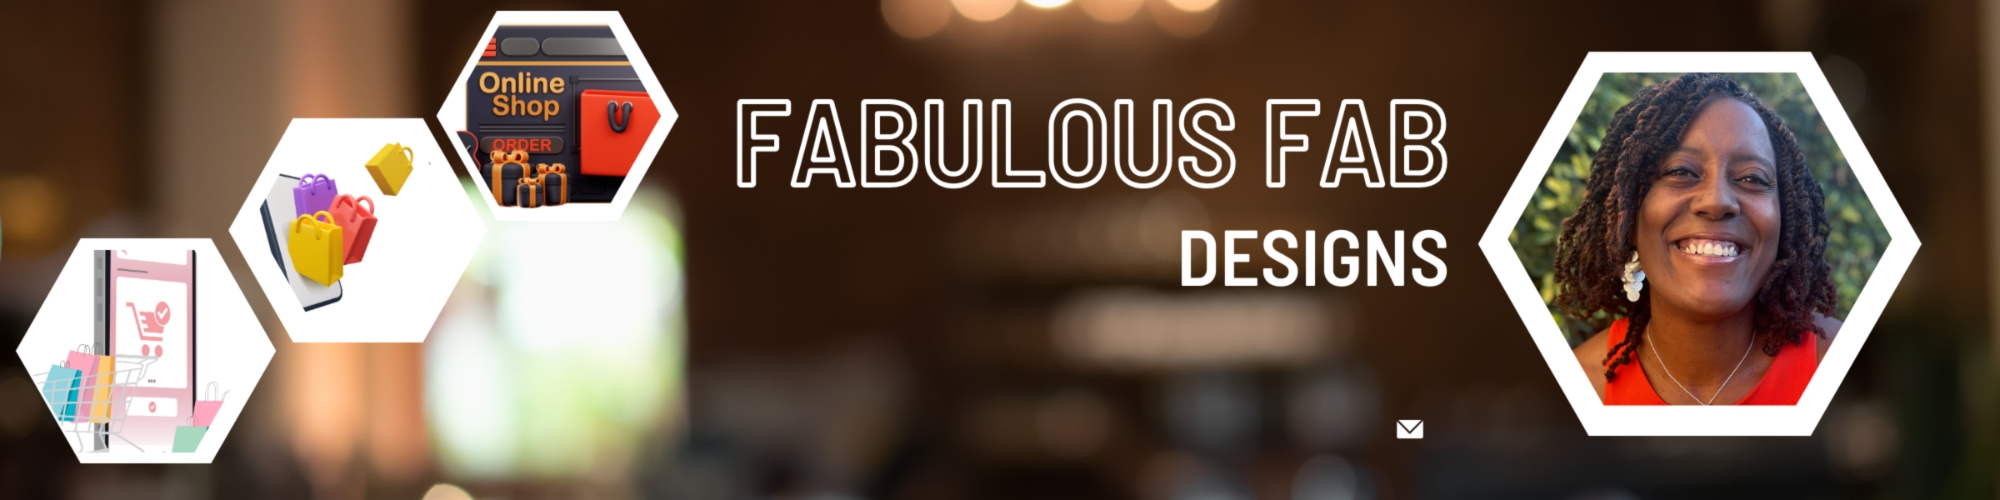 Showroom - FabulousFabDesigns